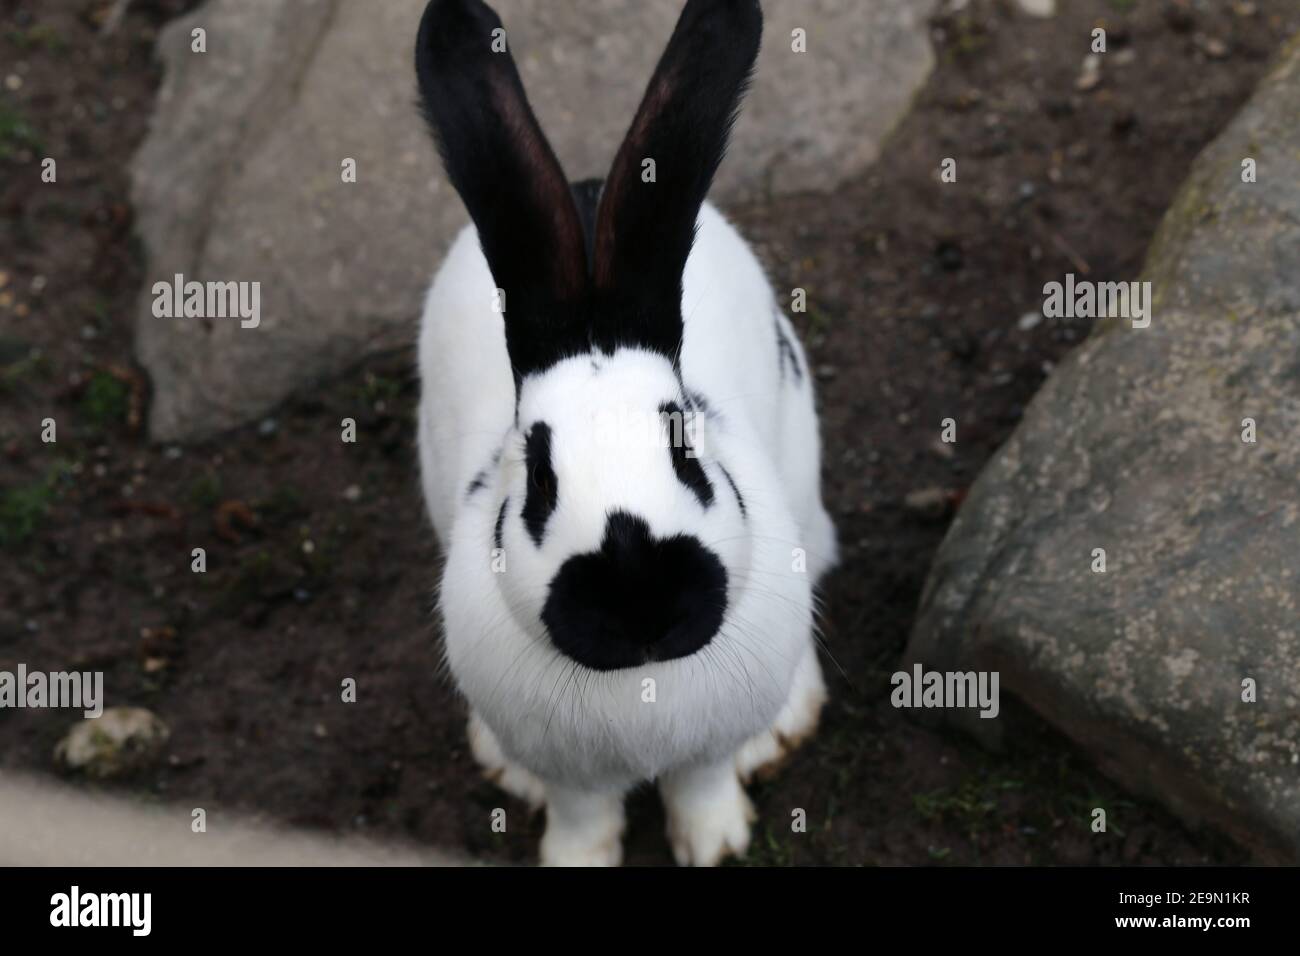 Simpatico coniglio di colore bianco e nero con alcuni punti neri e parti nere. Adorabile e soffice animale domestico fotografato all'aperto in un parco in una giornata di sole. Foto Stock